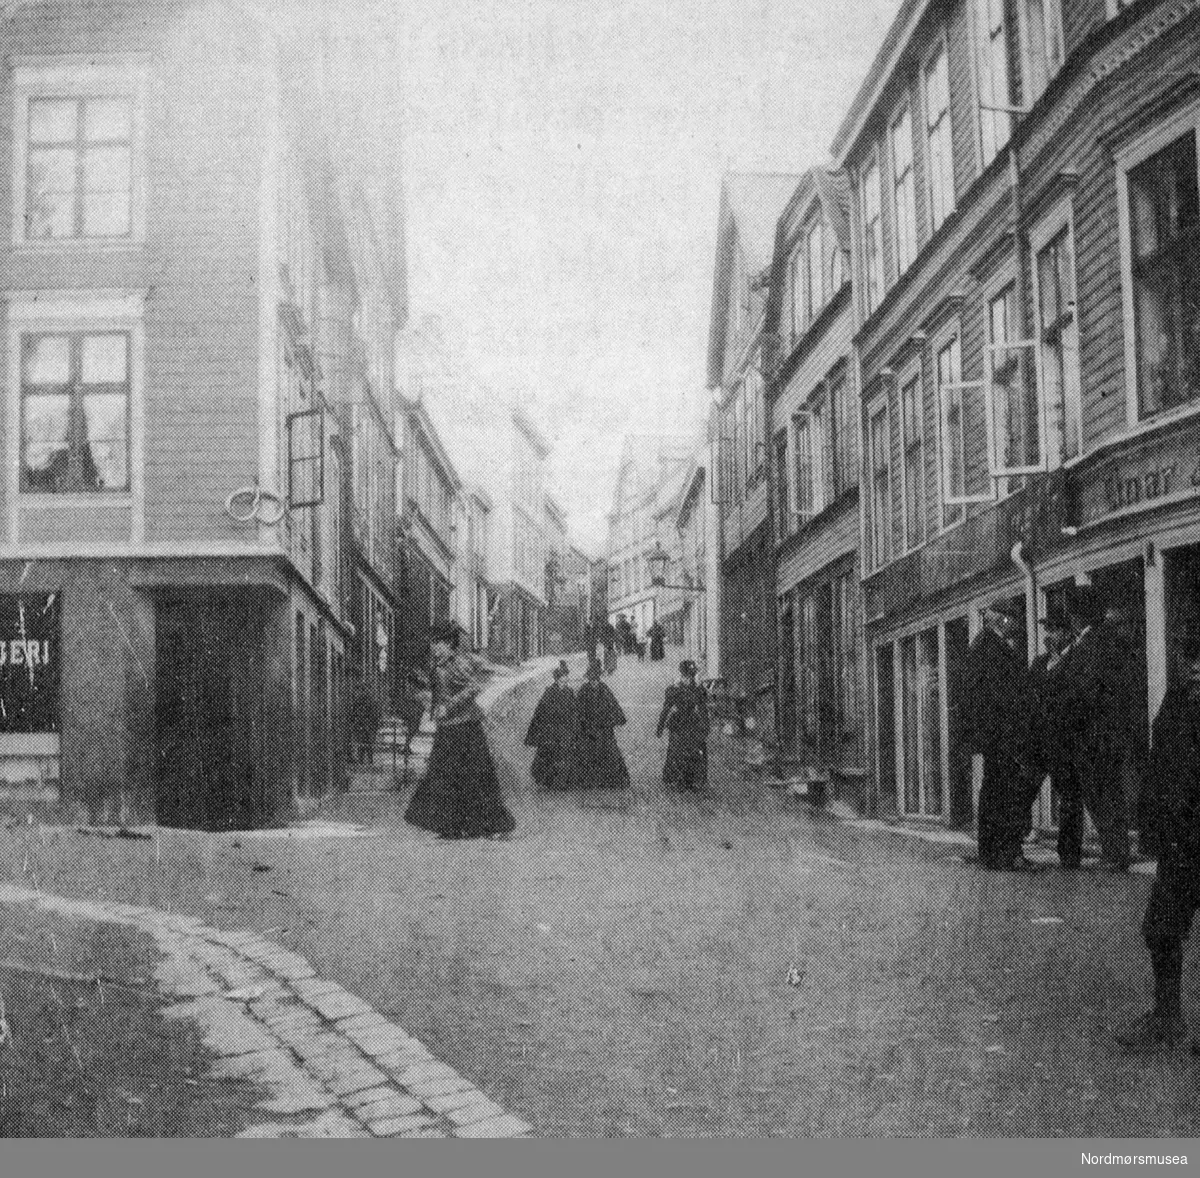 Søstrene Caroline (gift Knudtzon), Anna og Hilda Werring spaserer foran dr Werrings hus i Hauggt 12 (m/parafinlykt) ca 1895. (Fra Nordmøre Museums fotosamling)